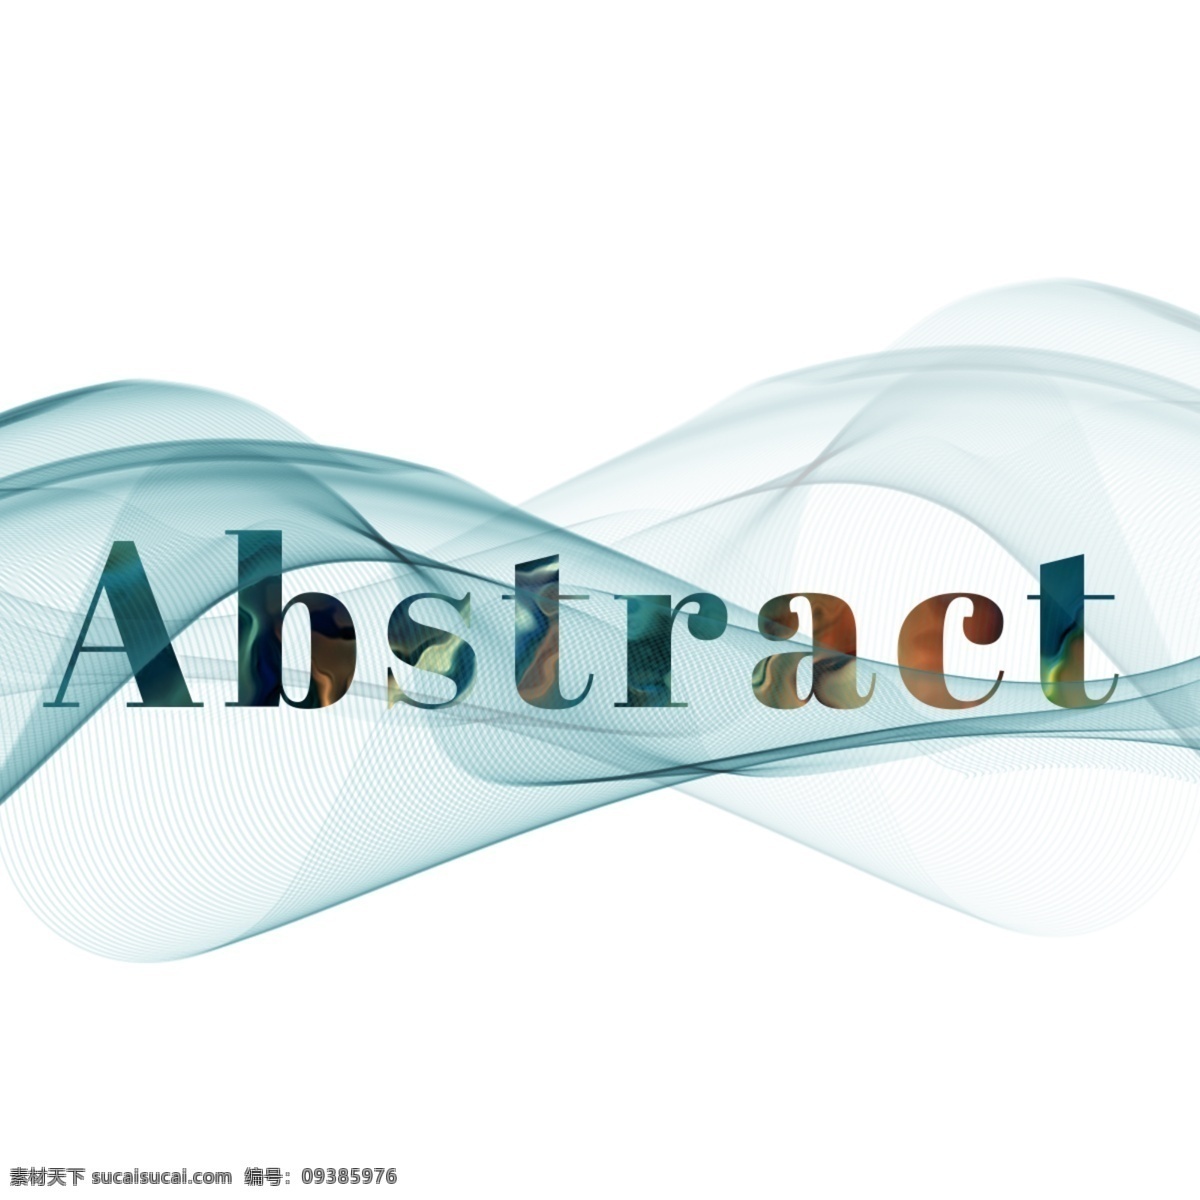 波 抽象 字体 抽象波 creativ 抽象字体 字体设计 图像